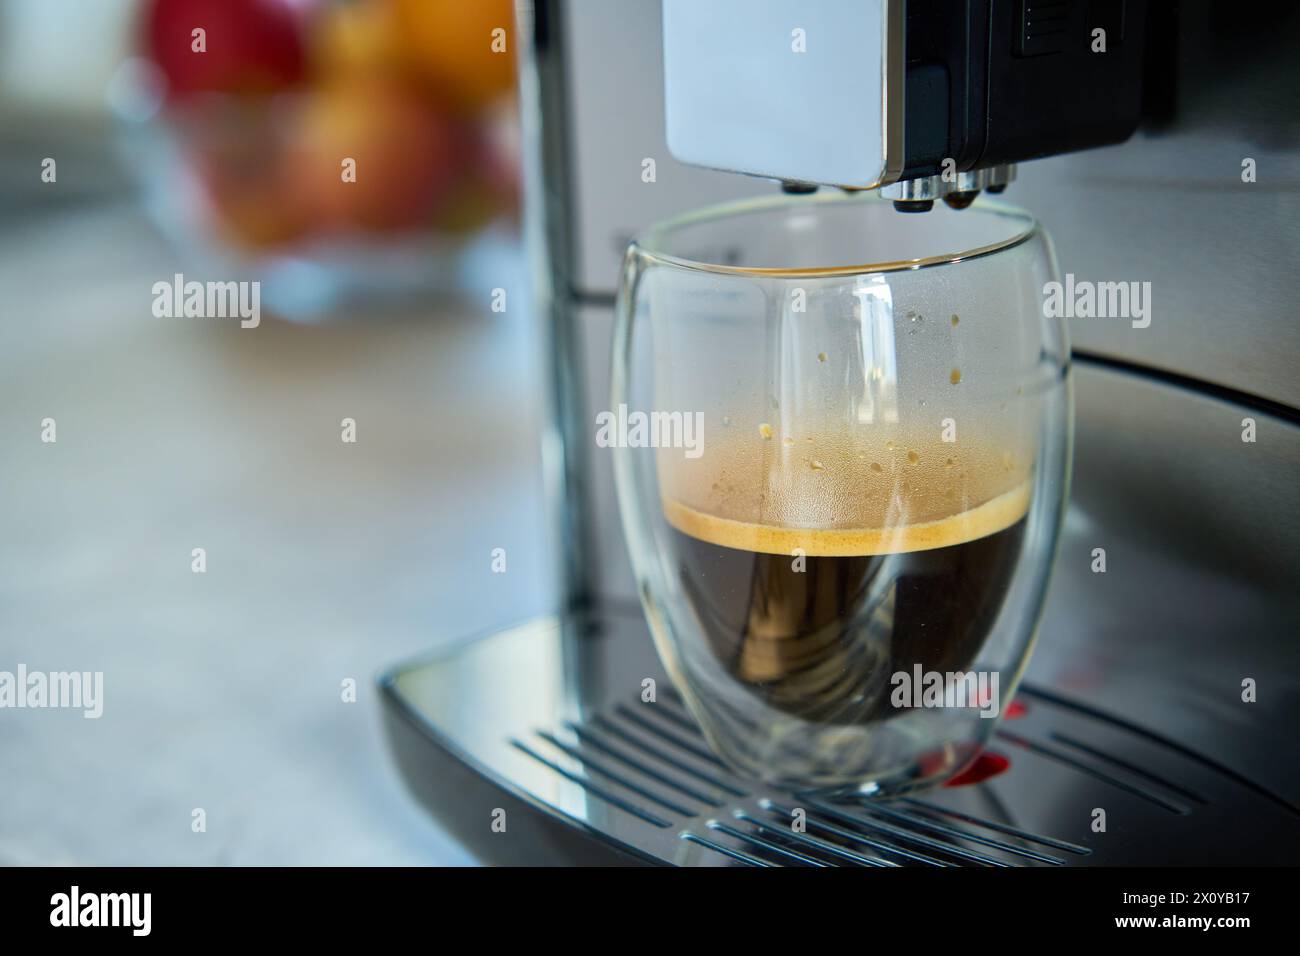 Frischer Espresso am Morgen. Kaffeemaschine in der Küche, Nahaufnahme. Moderne Kaffeemaschine mit frisch gebrühtem Kaffee in Glasbecher. Küchengeräte Stockfoto